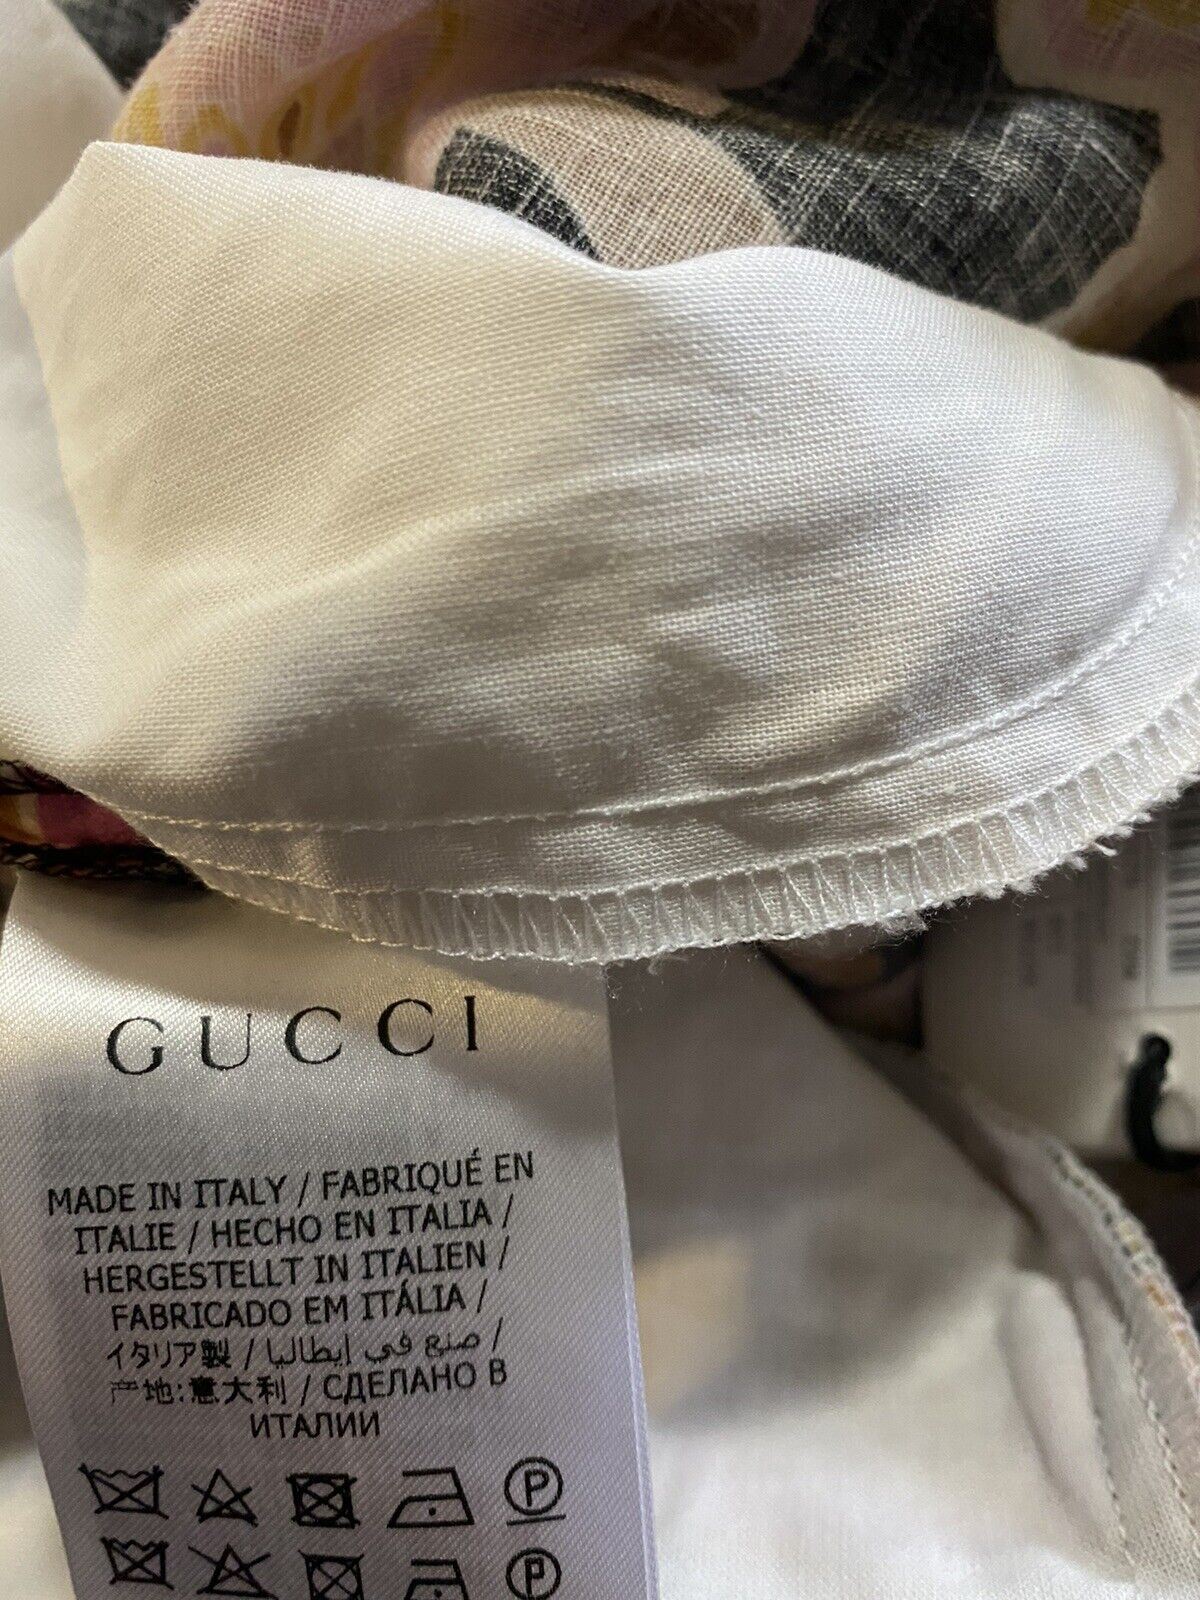 Neu mit Etikett: Gucci Herren-Shorts aus Leinen mit Gucci-Monogramm, Schwarz/Rosa/Beige, 30 US/44 Eu